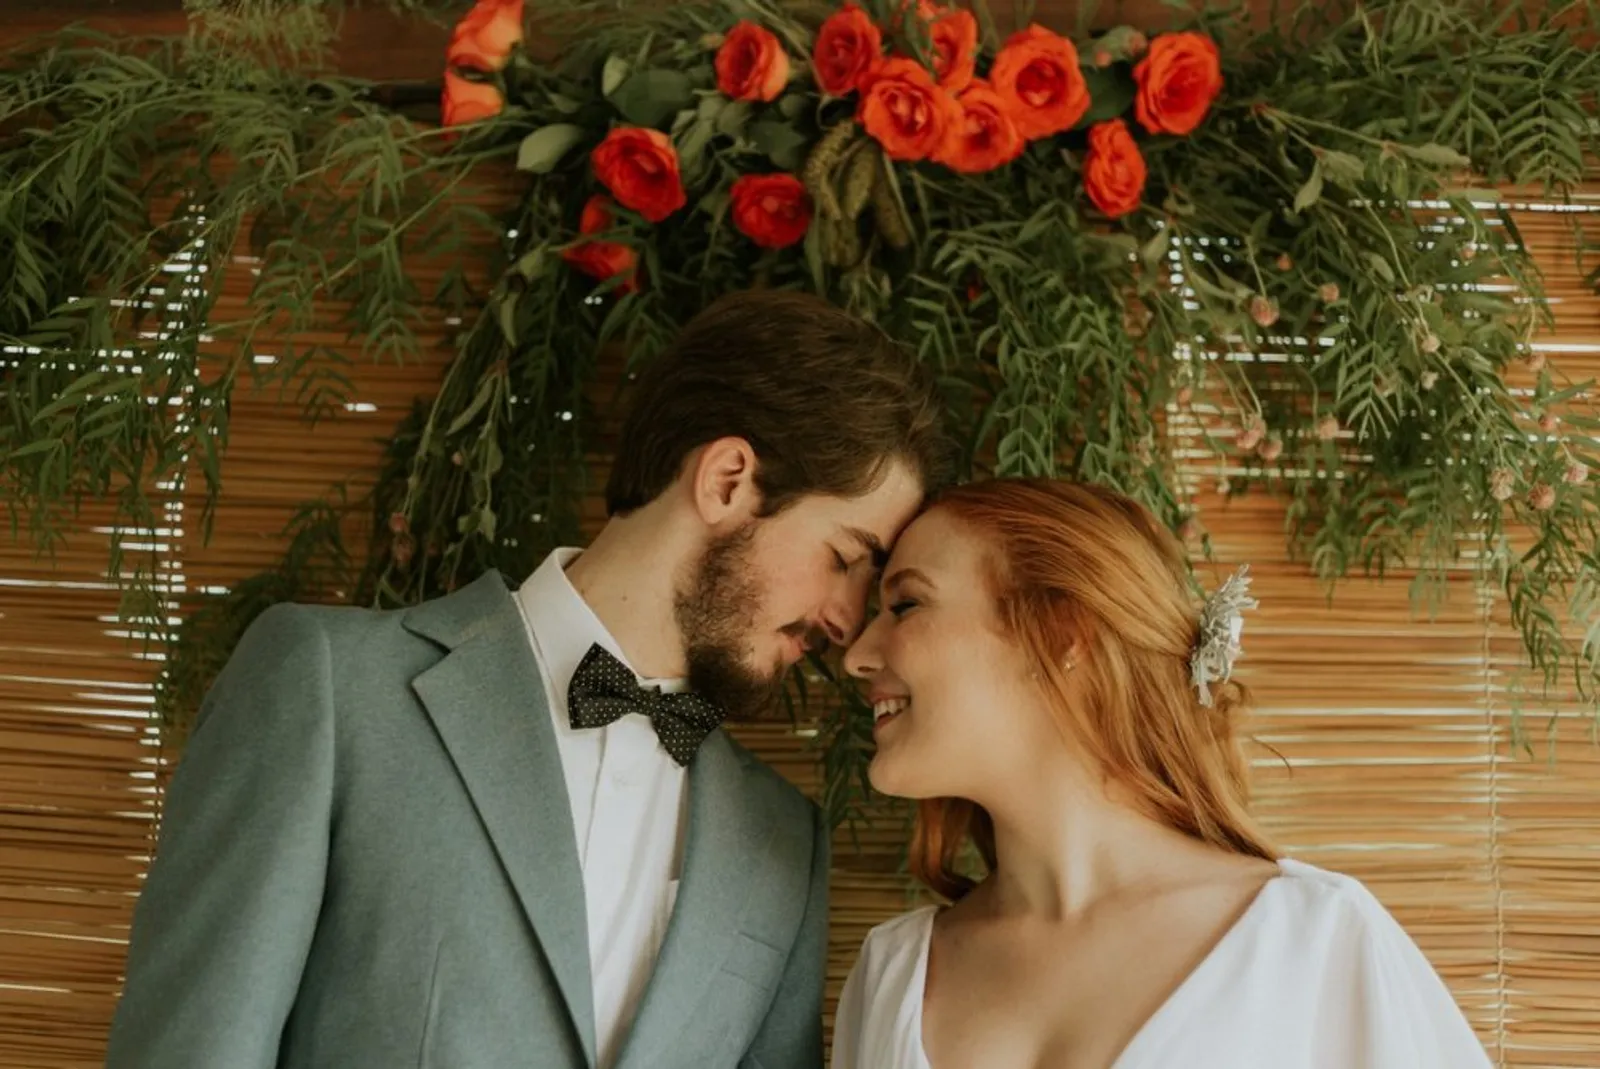 Anti Ribet, Ini 9 Tips Membuat Perencanaan Pesta Pernikahan